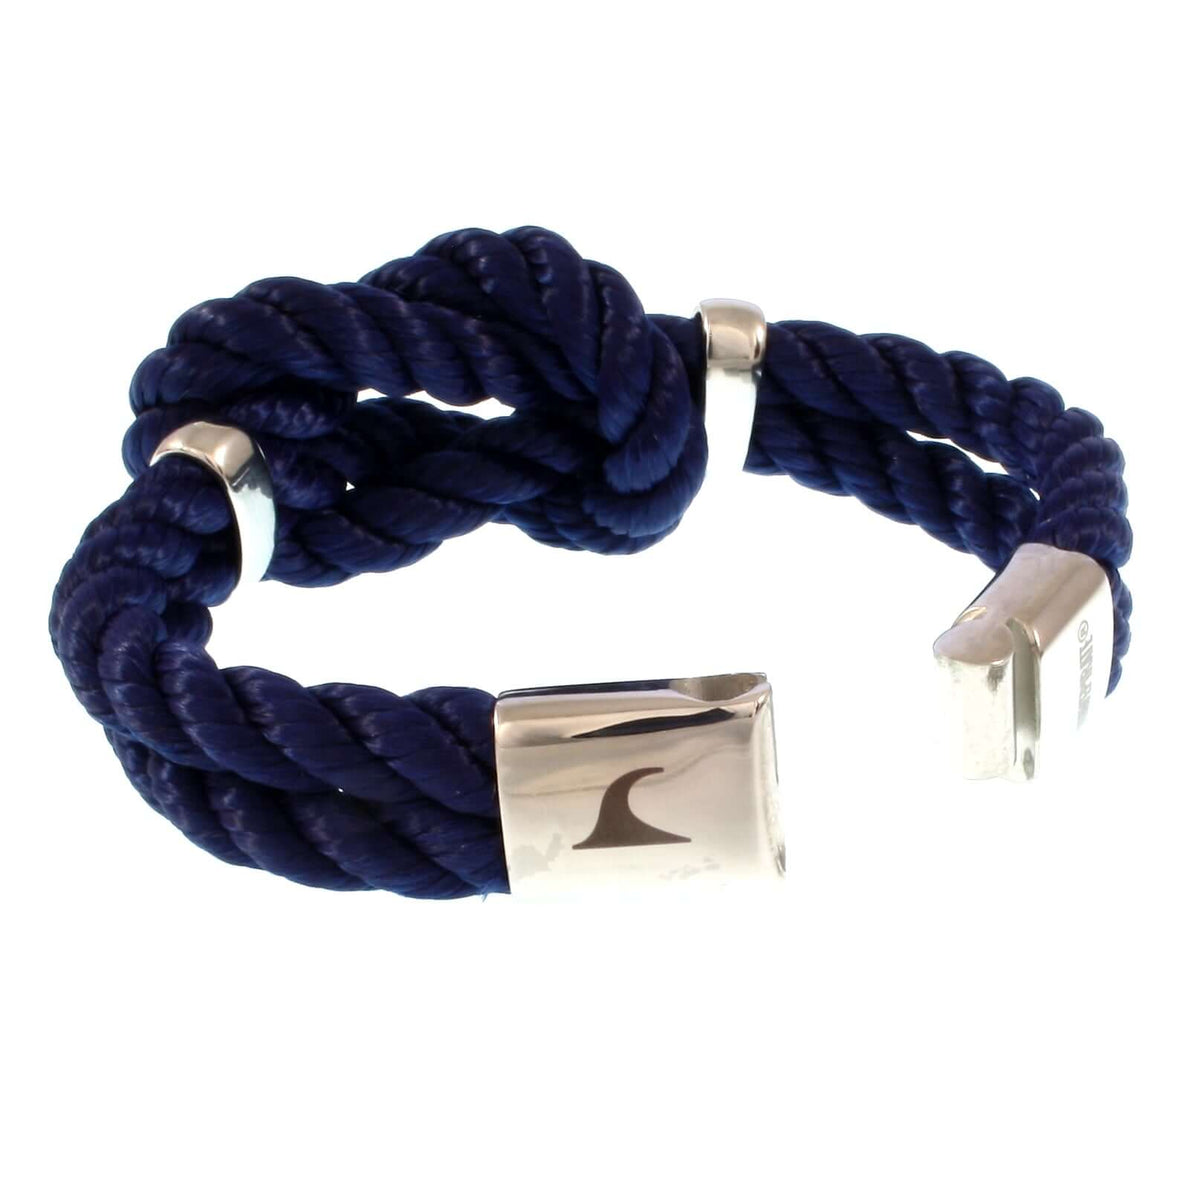 Damen-Segeltau-armband-pure-blau-silber-kordel-geflochten-Edelstahlverschluss-offen-wavepirate-shop-k